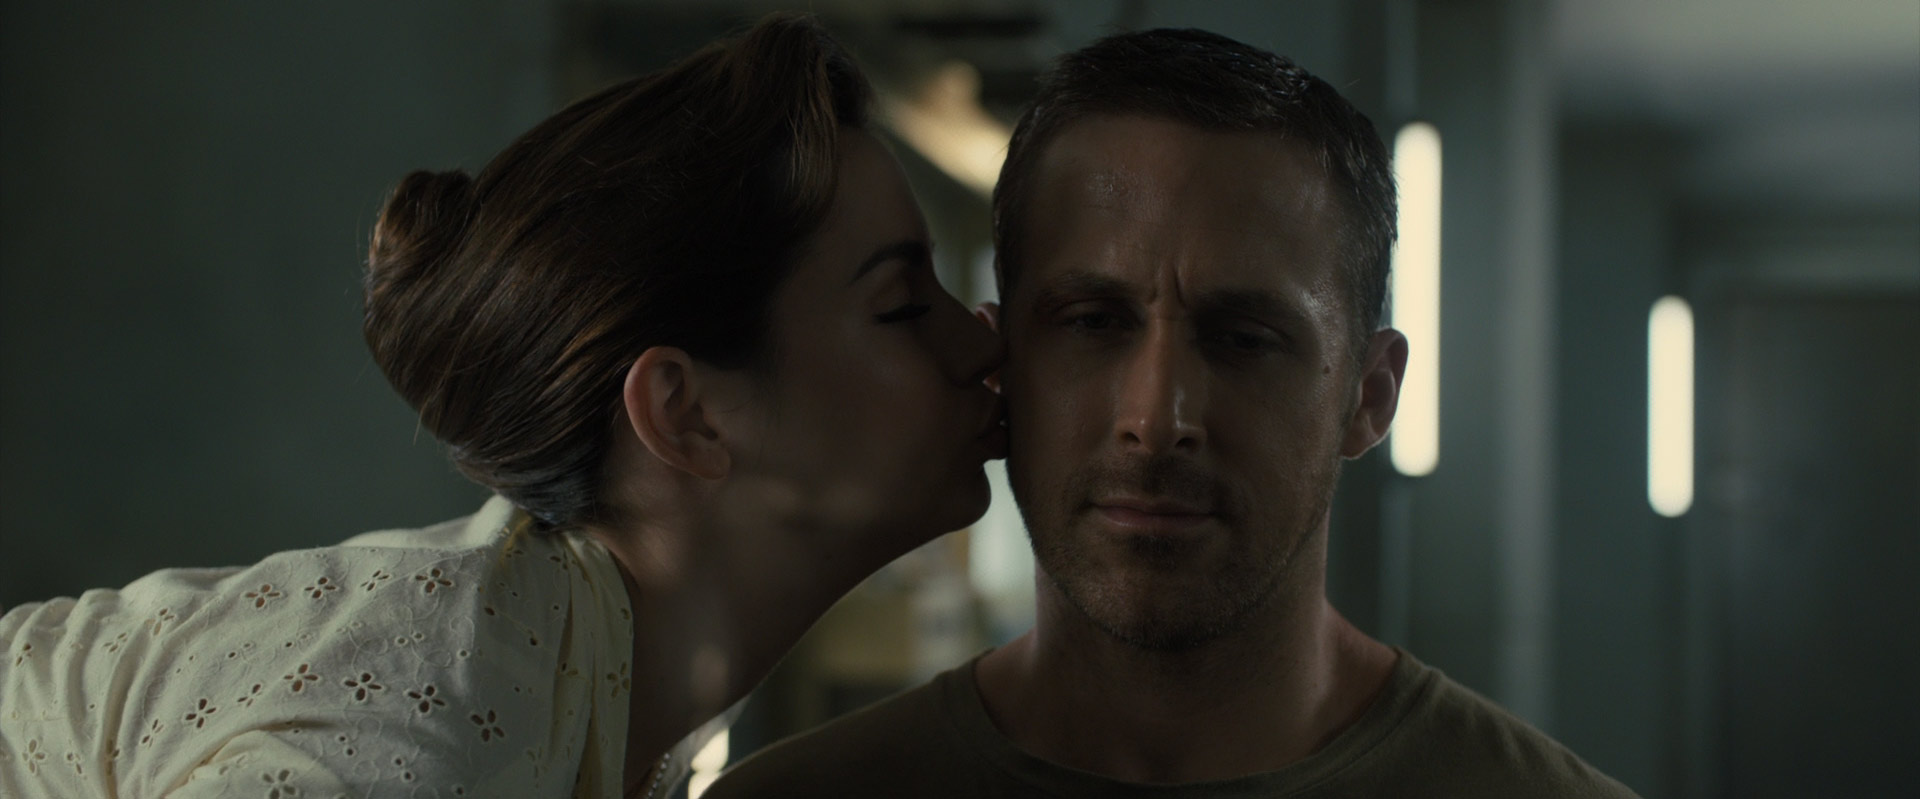 Ana de Armas in Blade Runner 2049. 